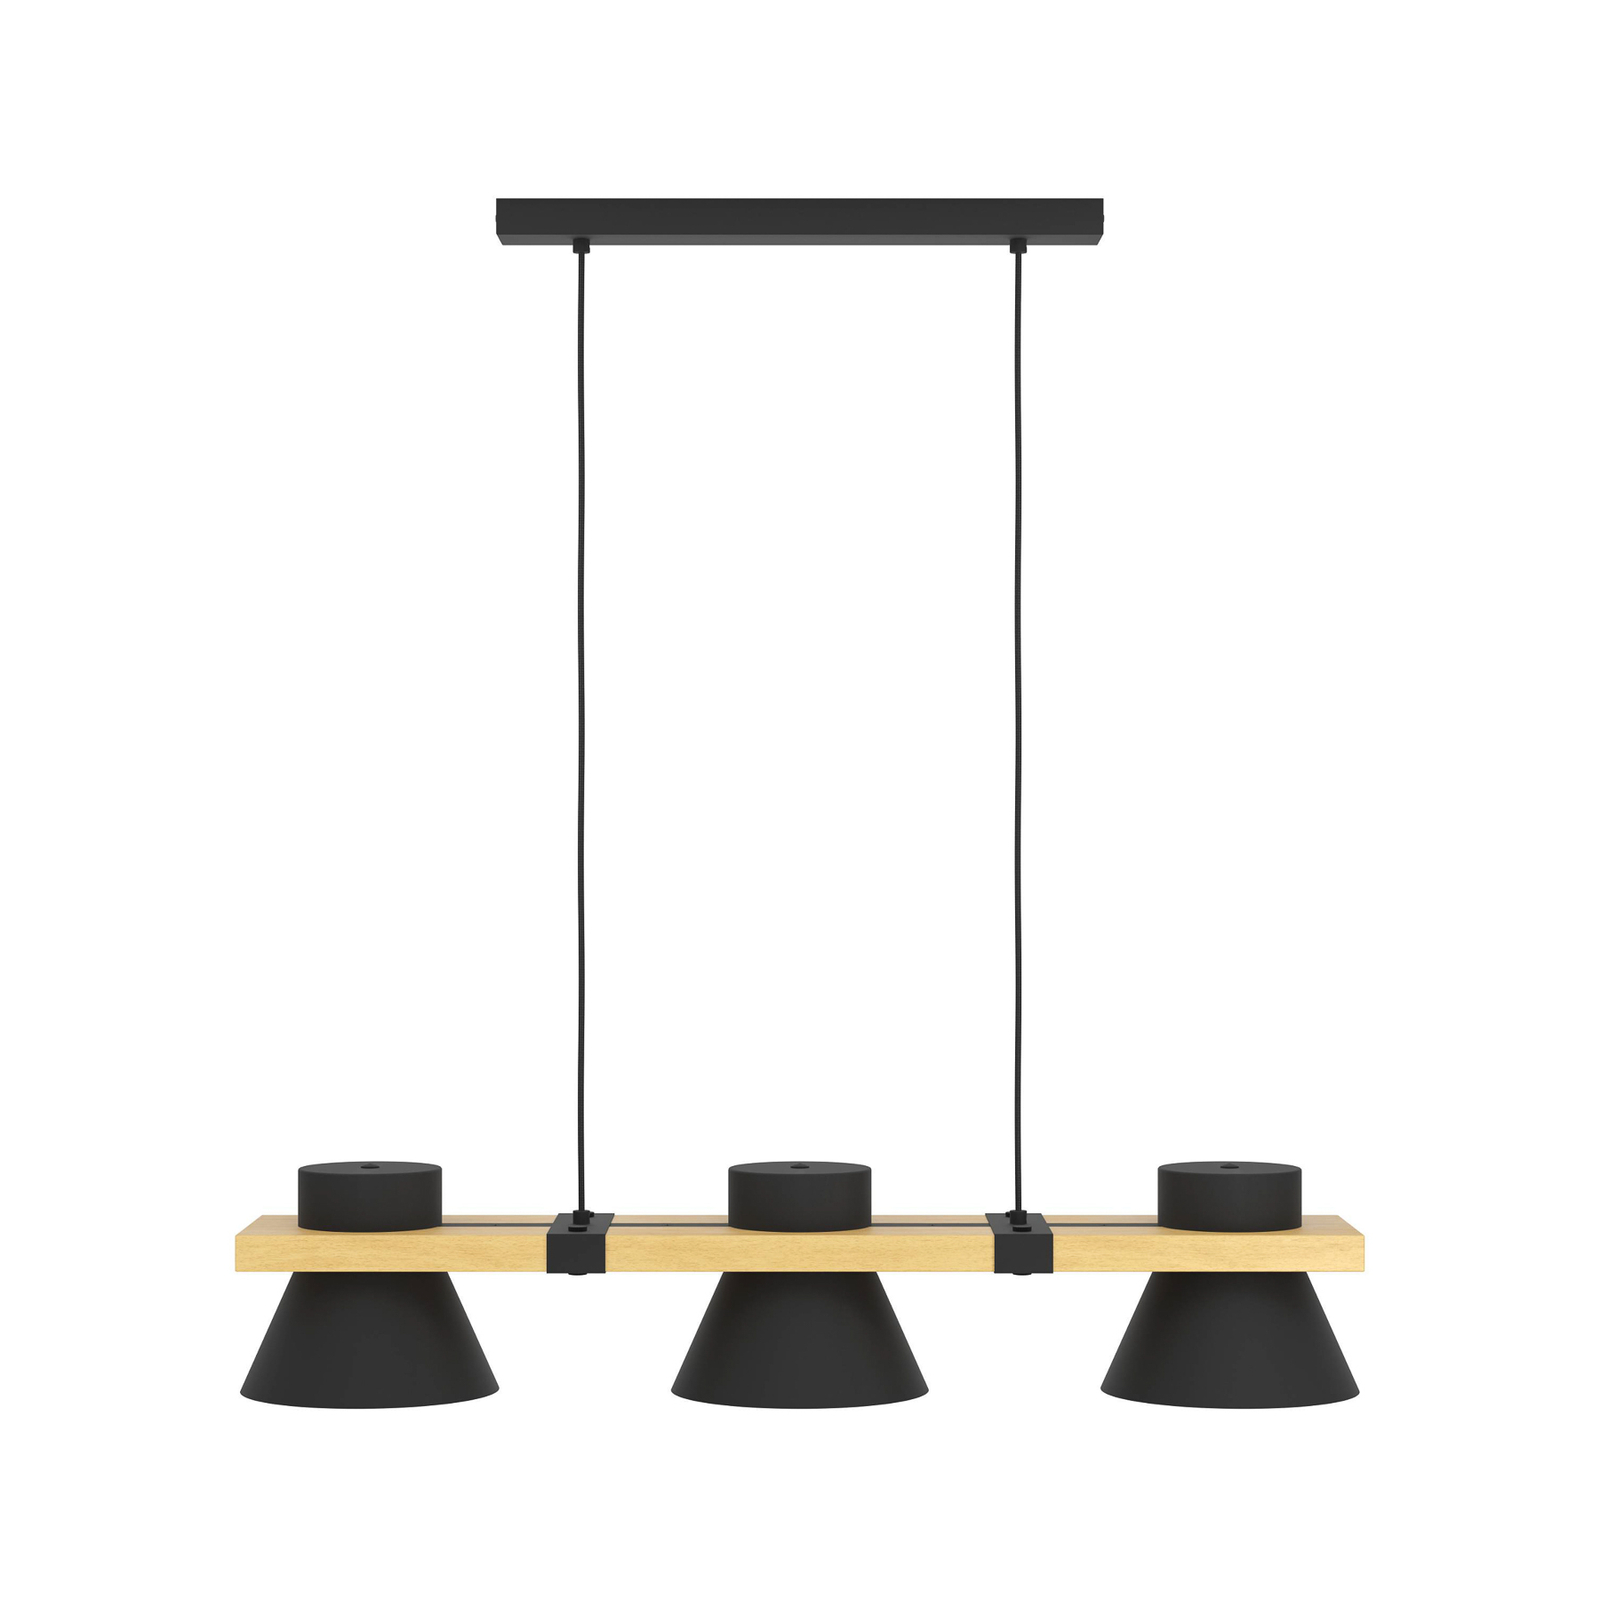 Hanglamp Maccles in zwart met hout, 3-lamps